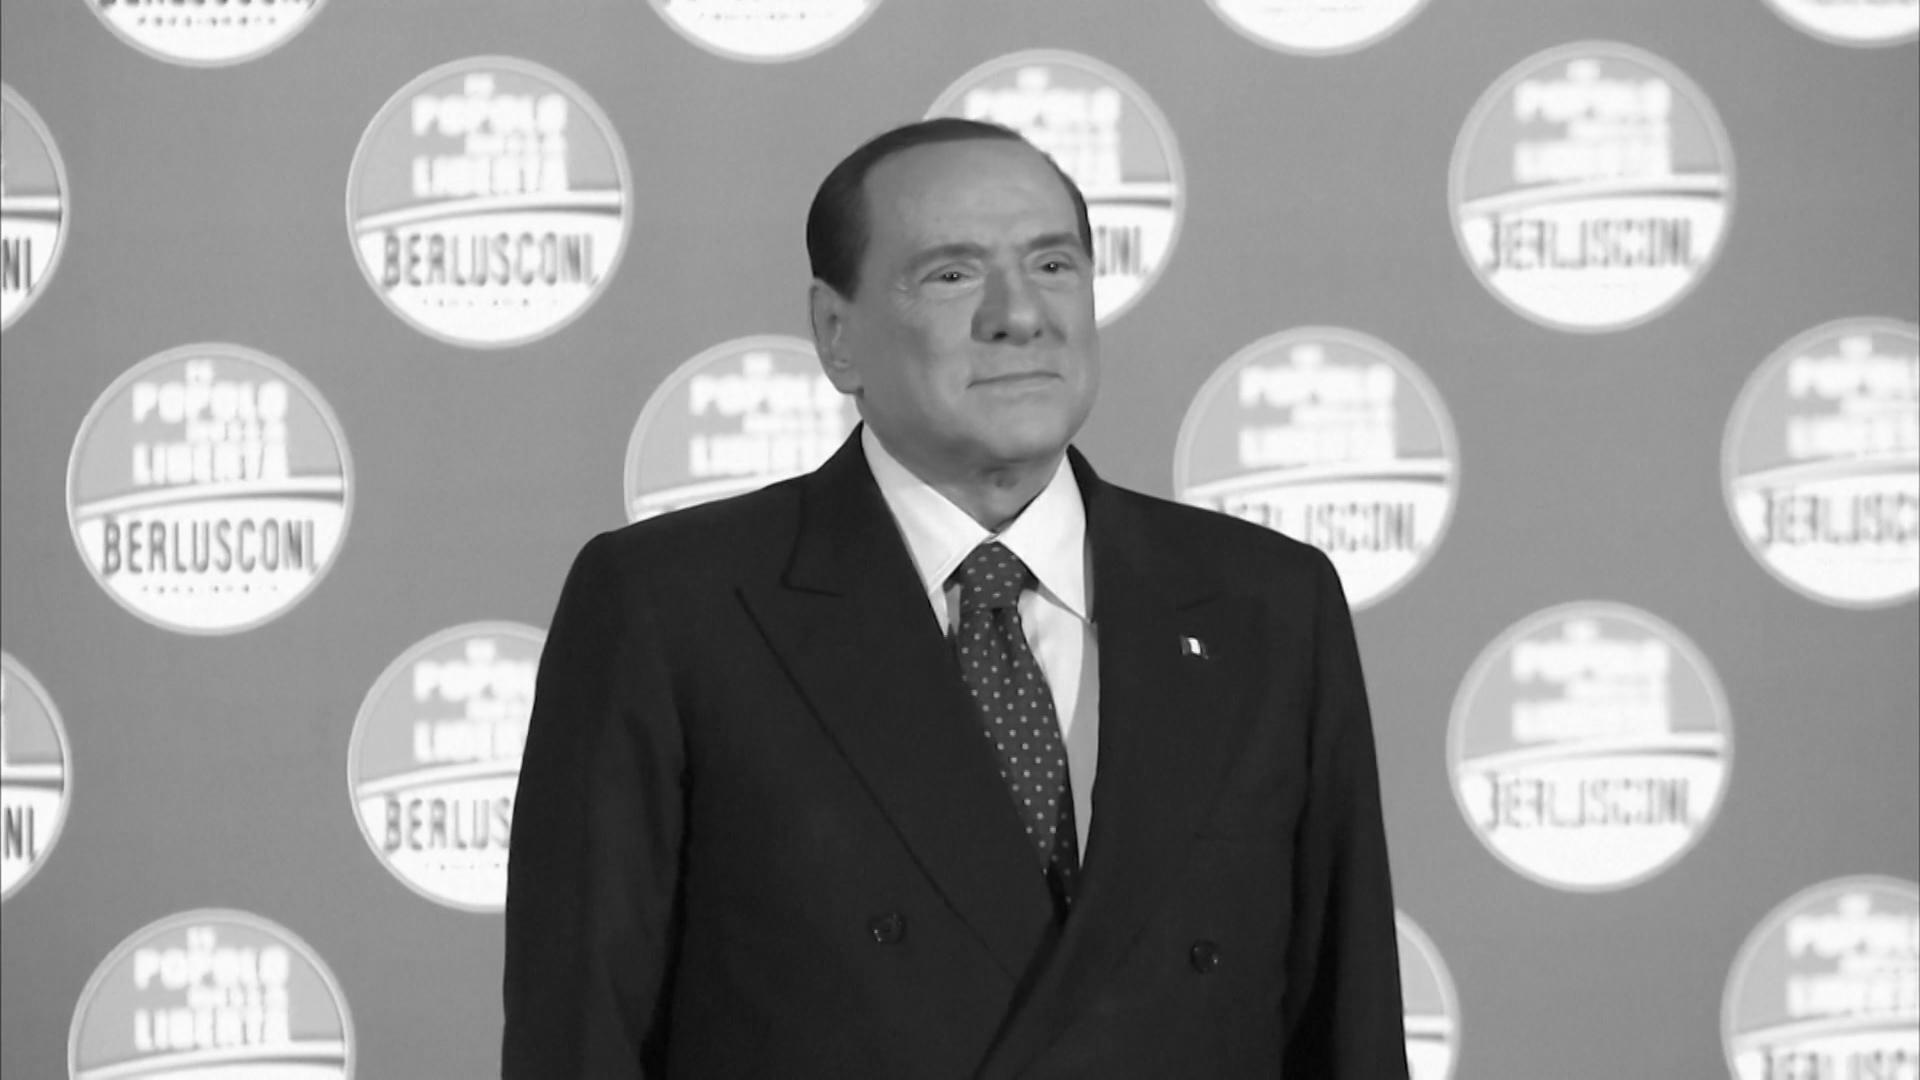 Silvio Berlusconi im Alter von 86 Jahren gestorben Italiens Ex-Ministerpräsident tot